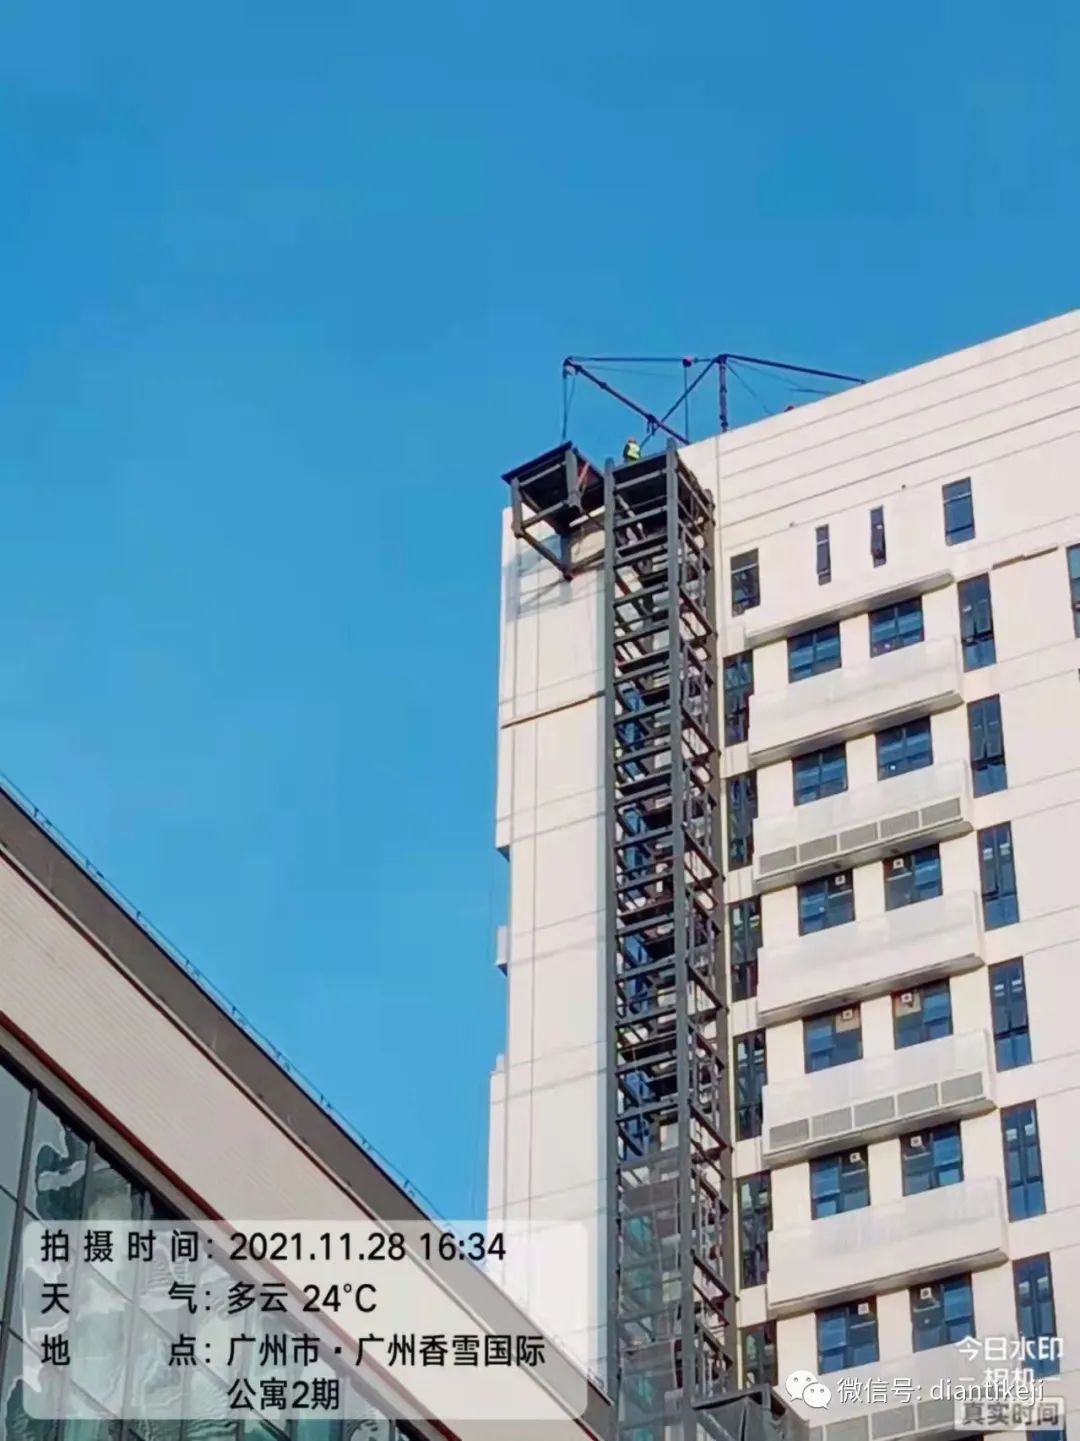 21层80多米高的外挂钢结构电梯成功封顶了，刷新室外改建加装电梯高度记录